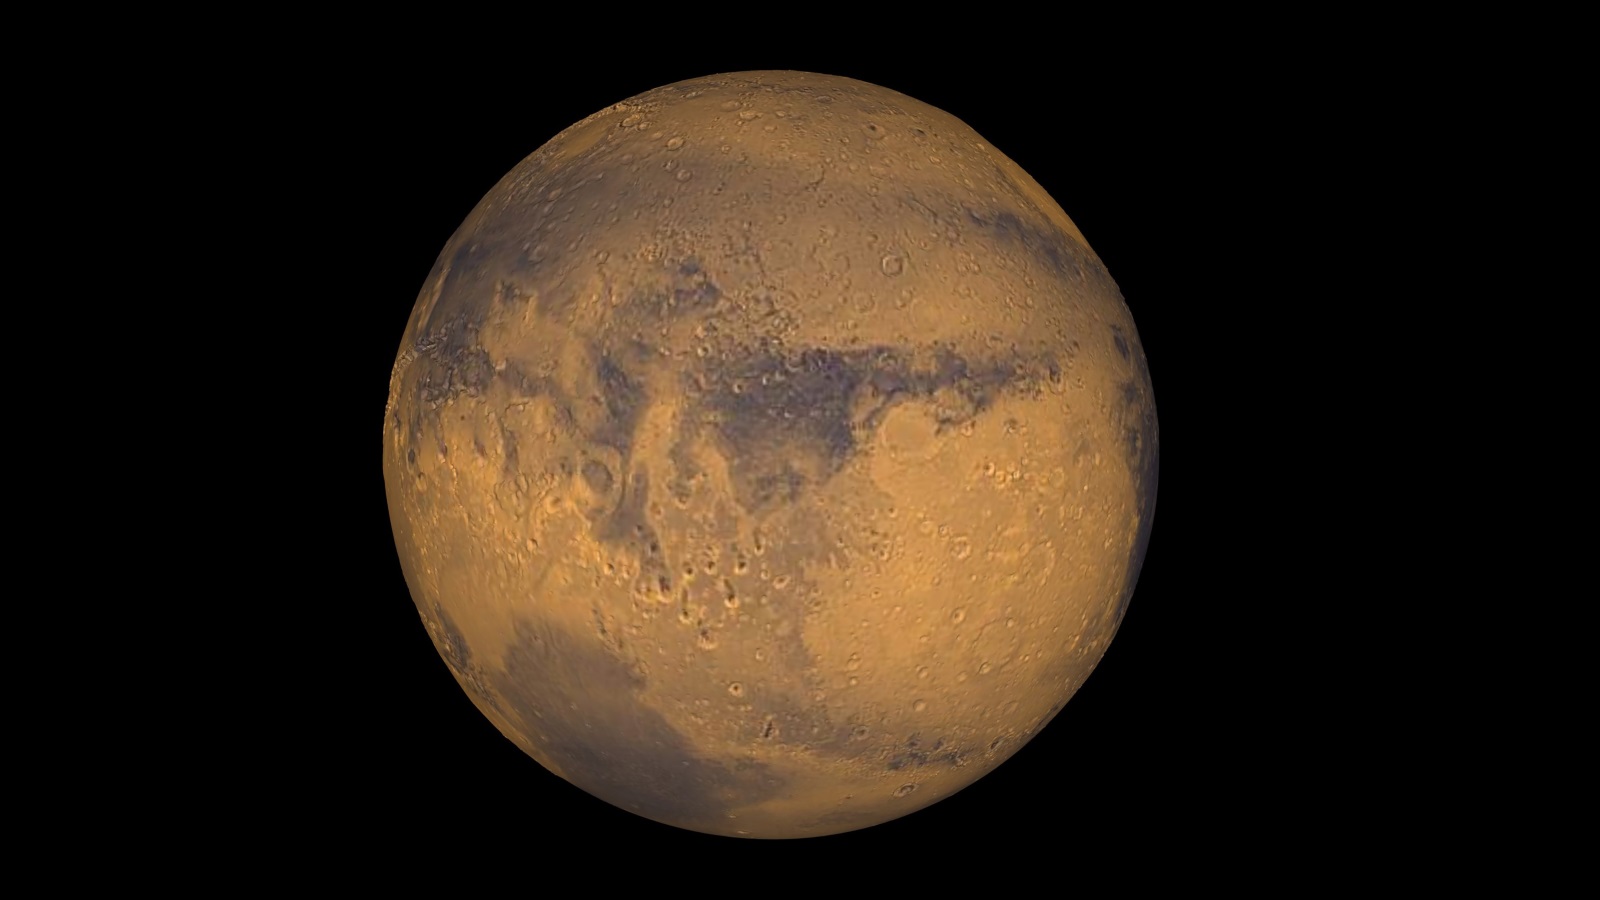 ‪فترة القصف النيزكي على المريخ أشبه بالقصف الذي تعرضت له الأرض وكذا القمر فيما تسمى 